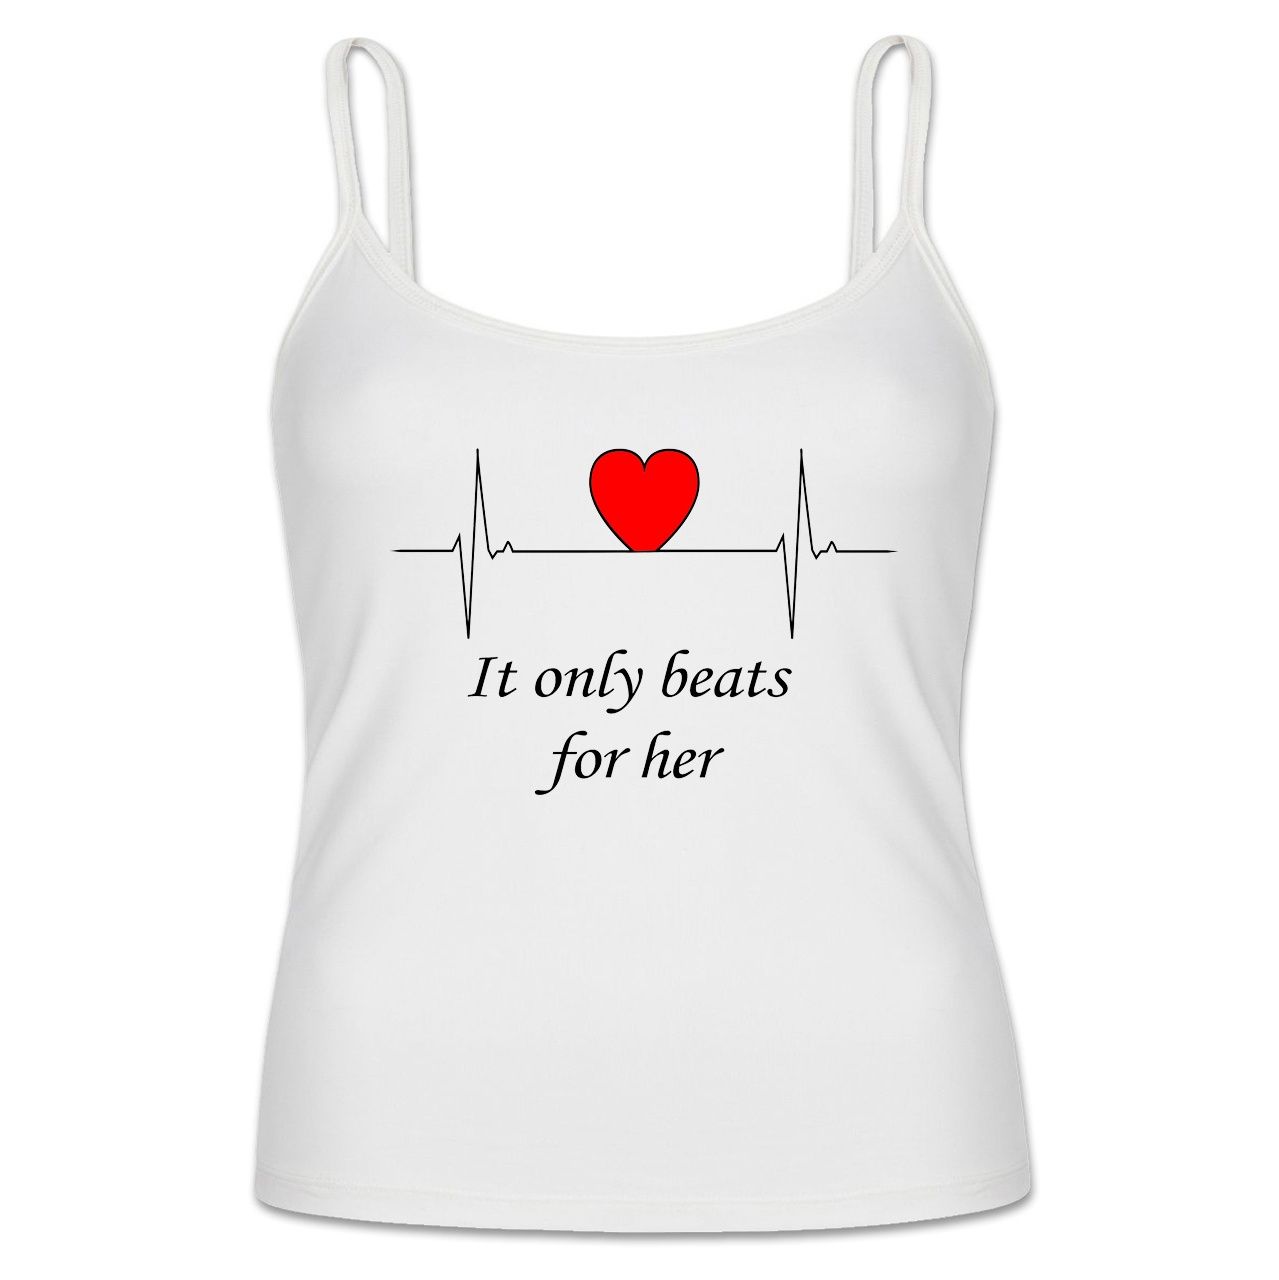 تاپ زنانه به رسم طرح ضربان قلب کد 775 -  - 1